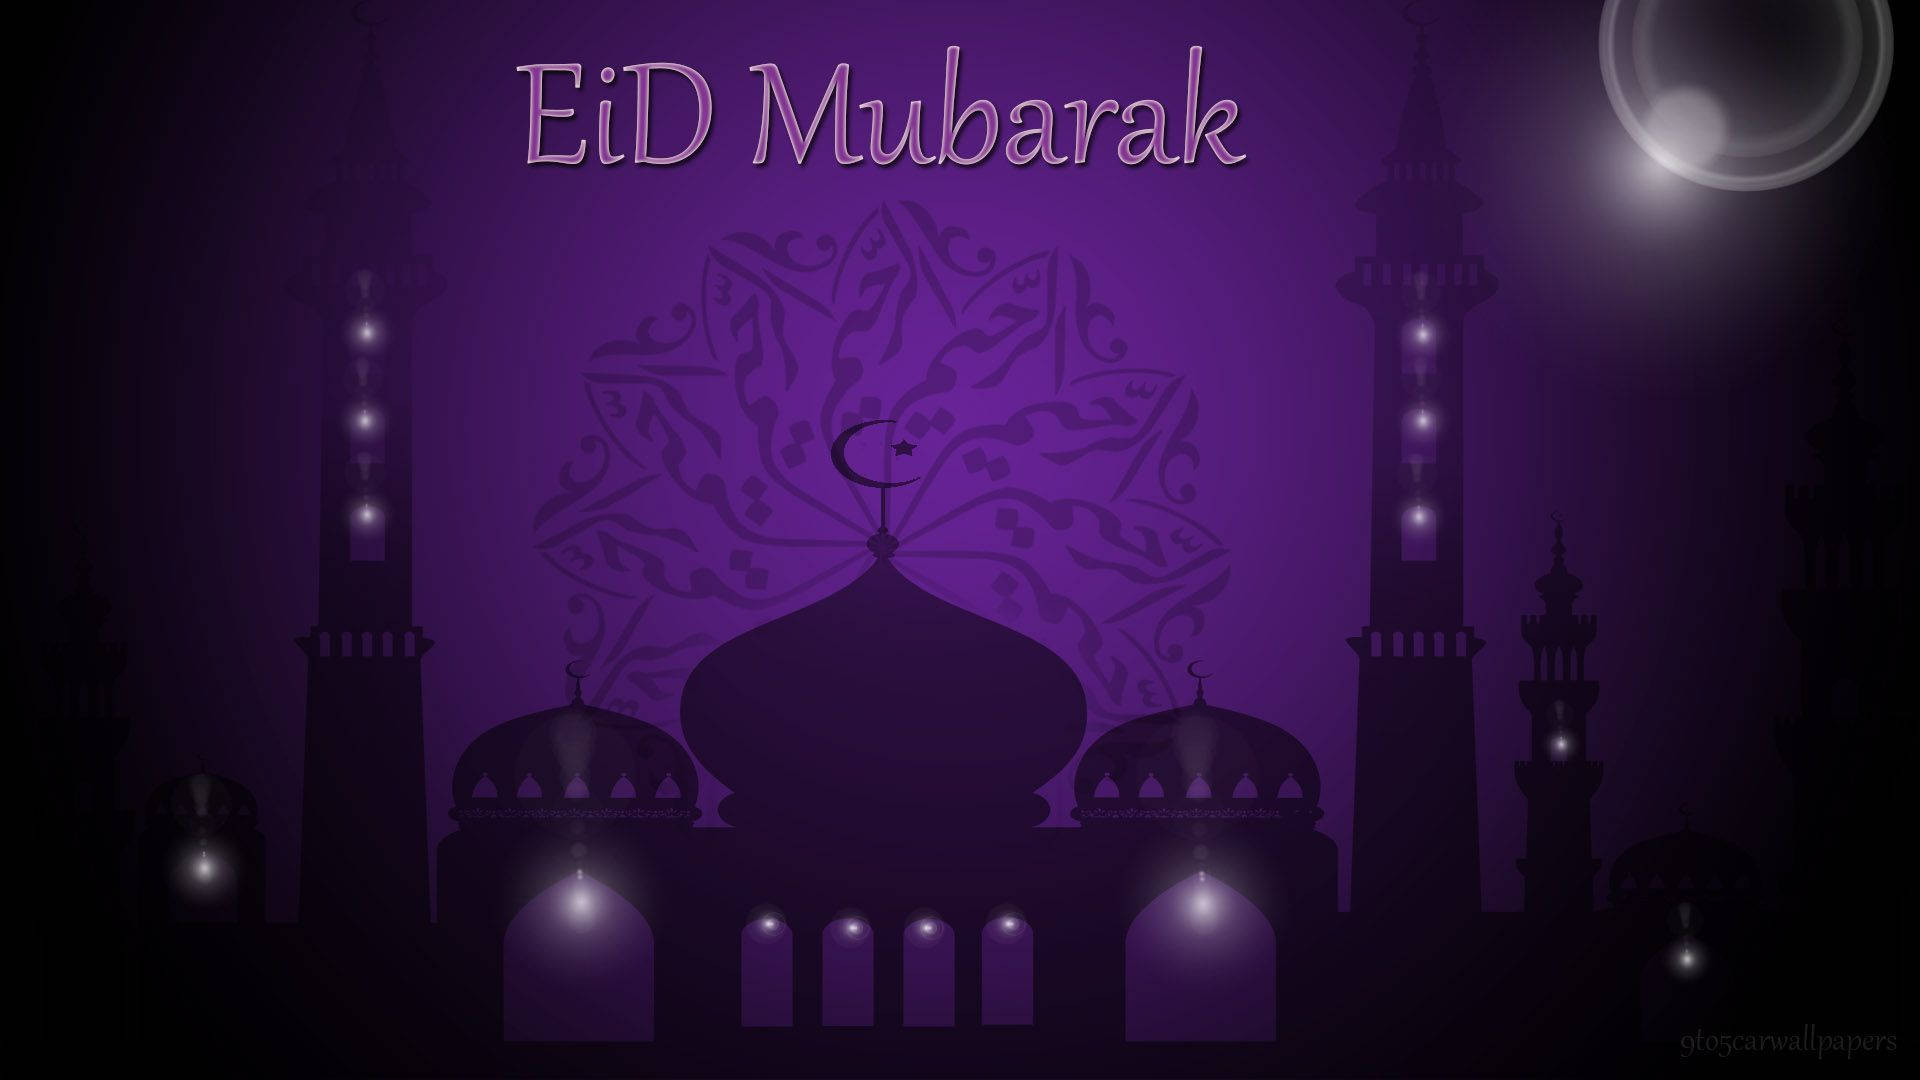 Caption: Celebrating Eid Mubarak With Traditional Illuminations Background